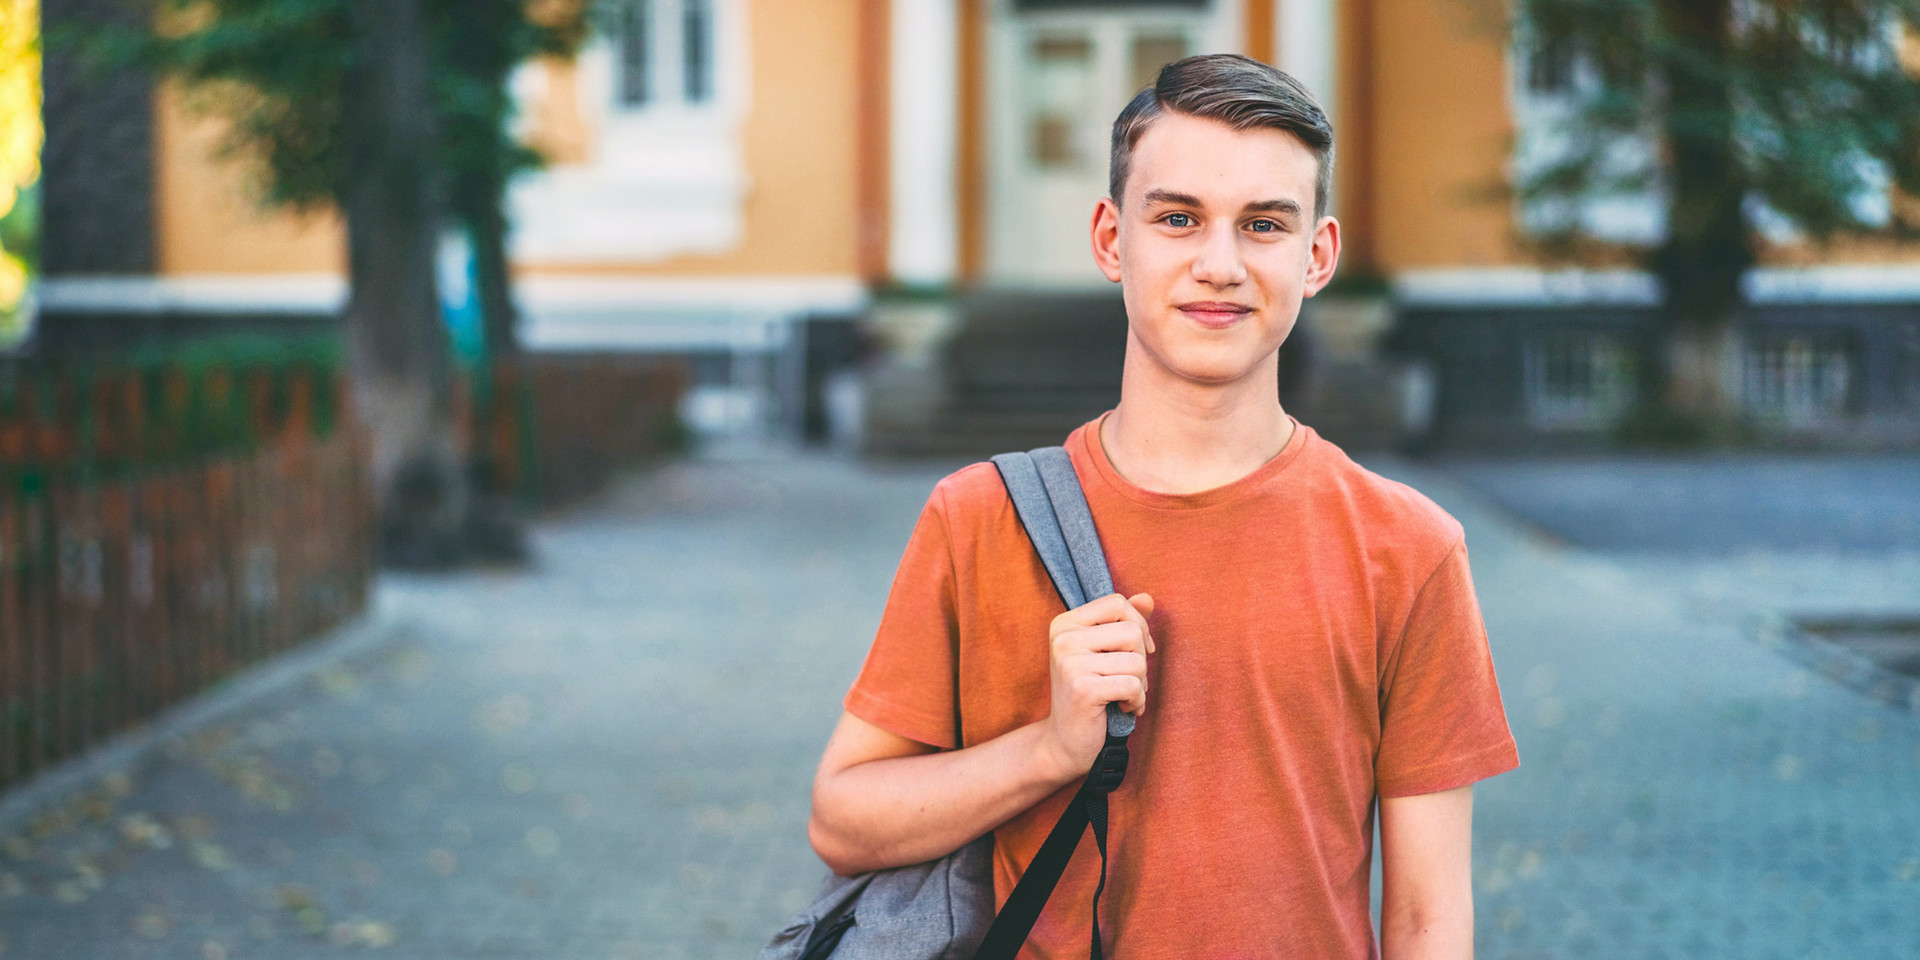 Berufsausbildung für Jugendliche mit Einschränkungen am SRH Berufsbildungswerk Dresden